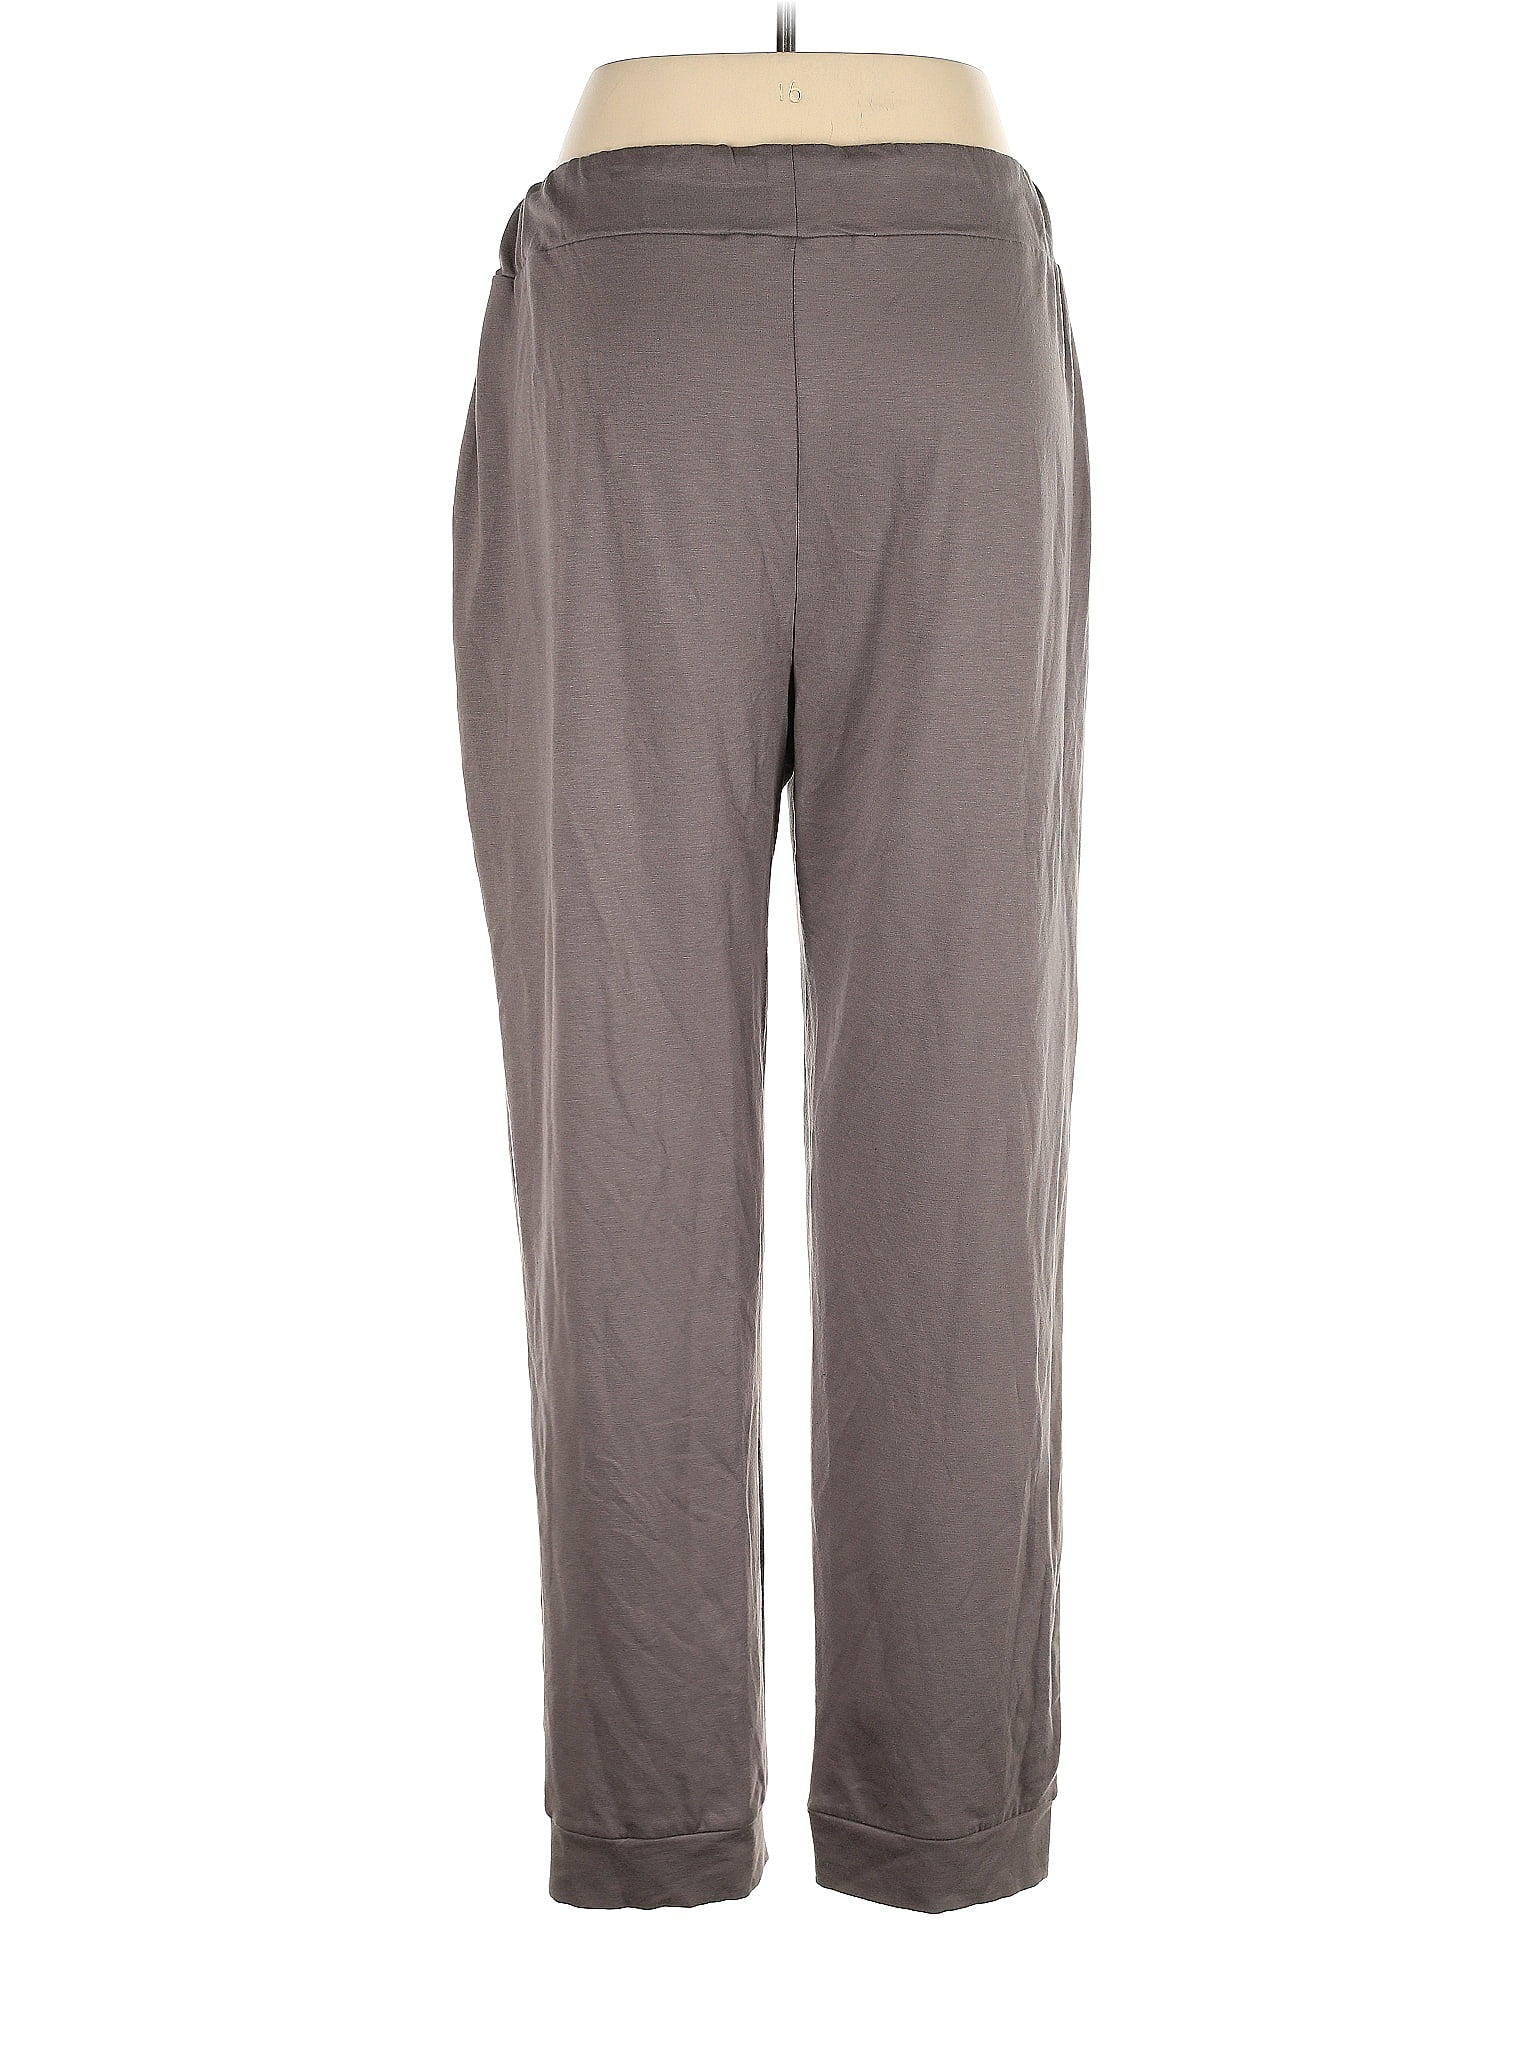 Zelos Gray Active Pants Size 2X (Plus) - 50% off